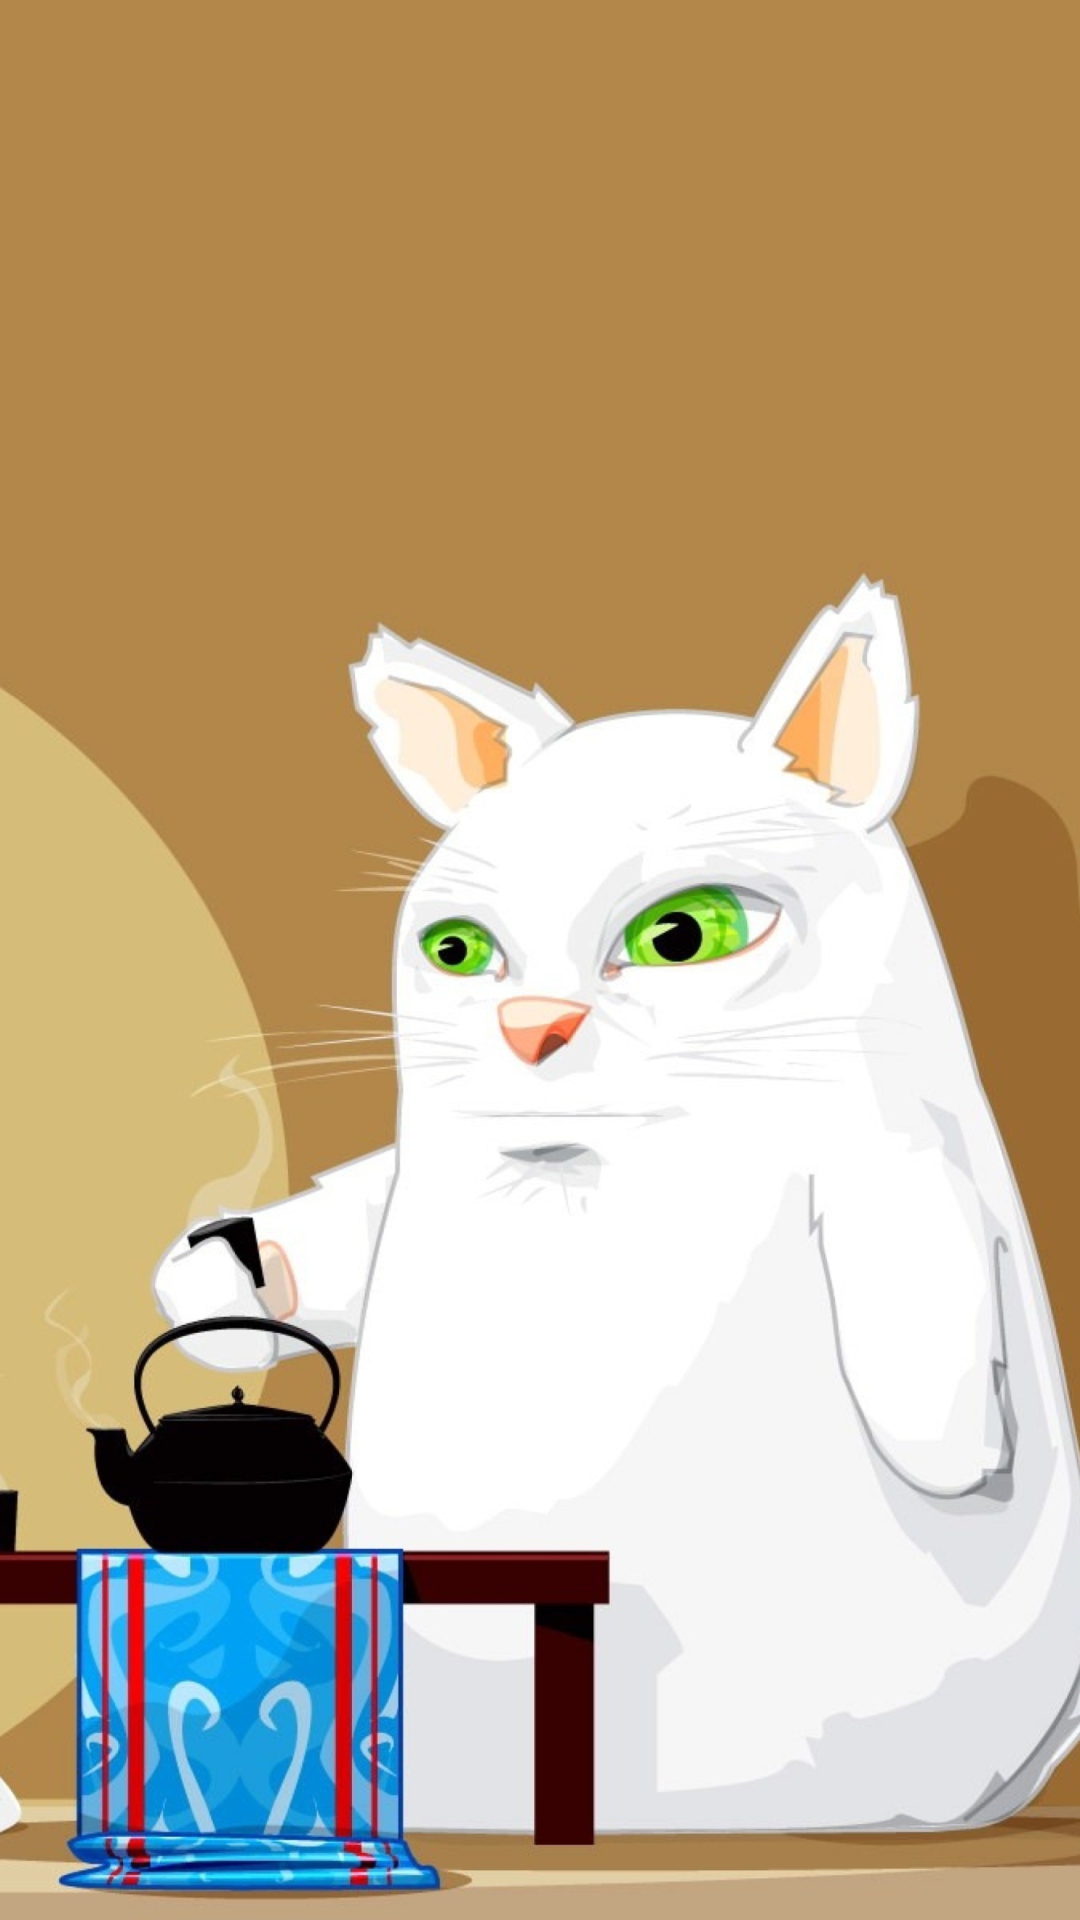 Tea Cat wallpaper 1080x1920